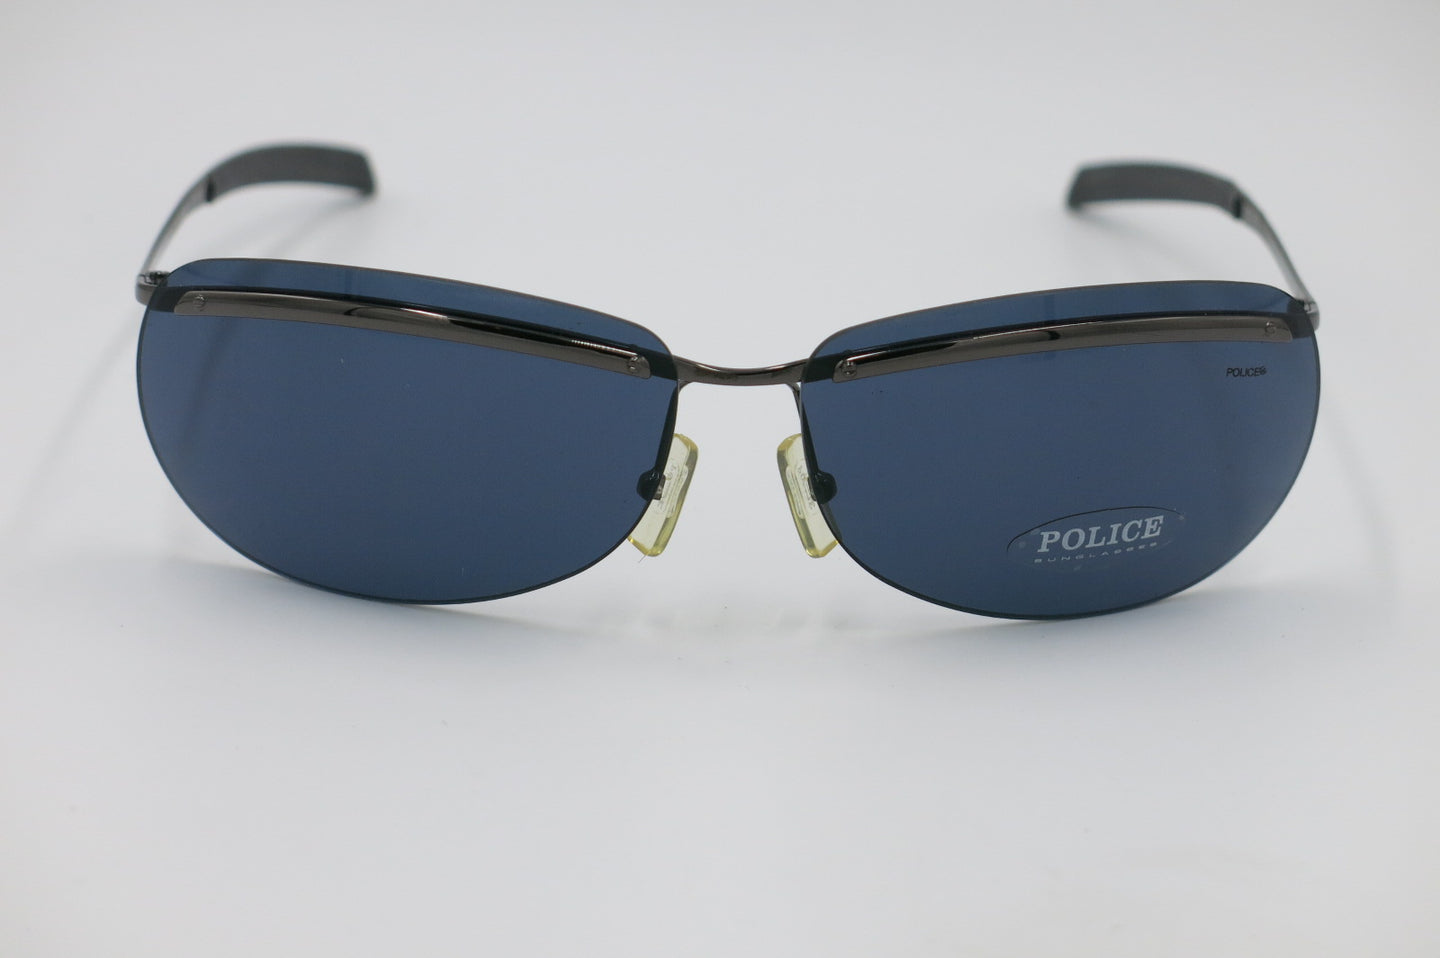 Vintage Police Sunglasses 2662